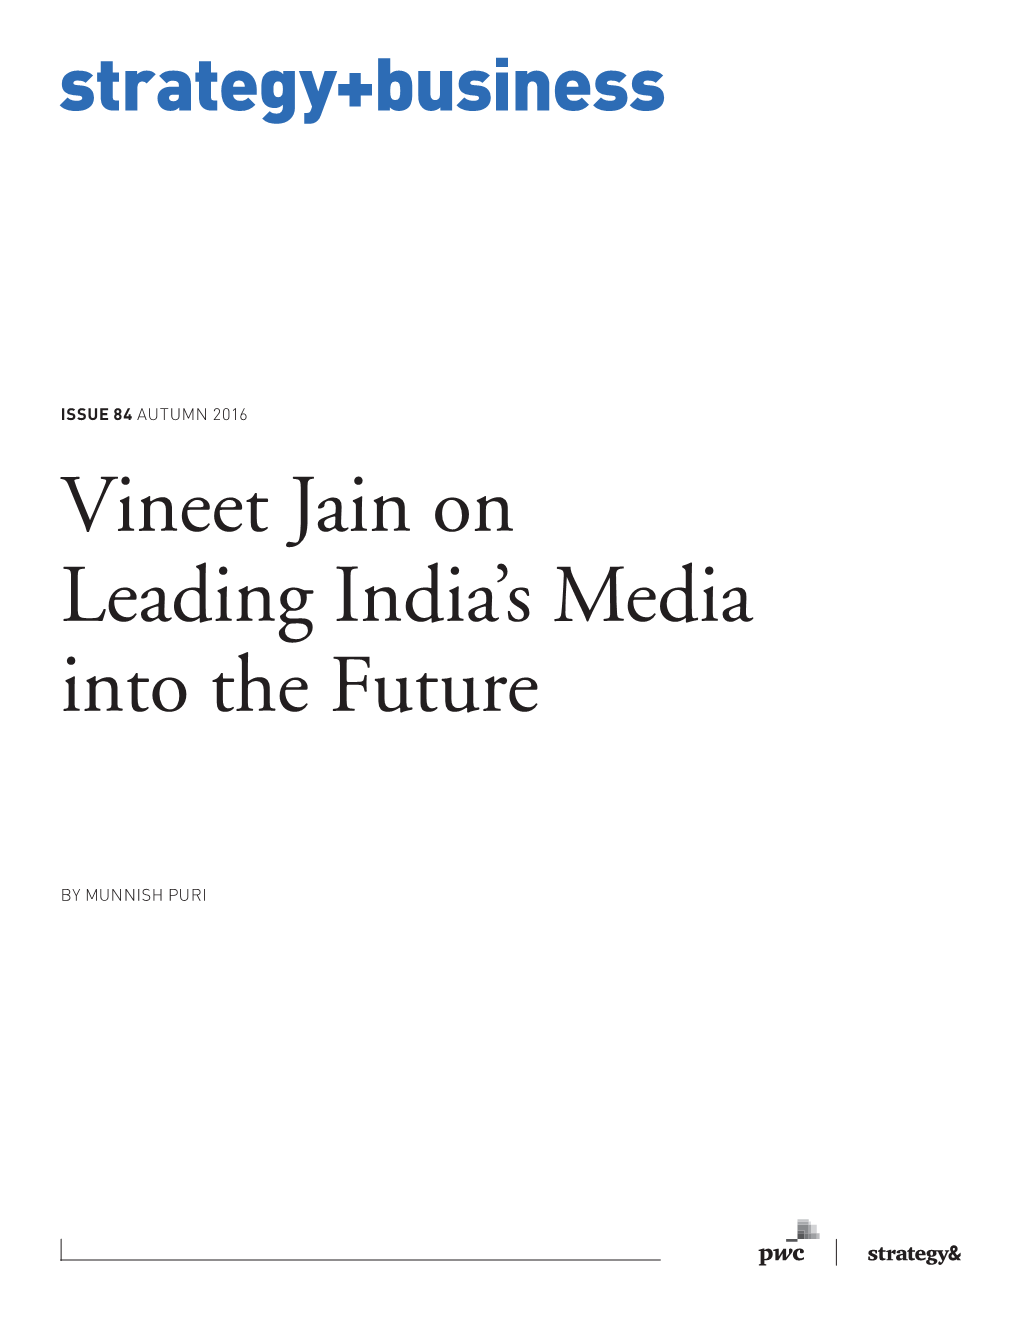 Vineet Jain on Leading India's Media Into the Future